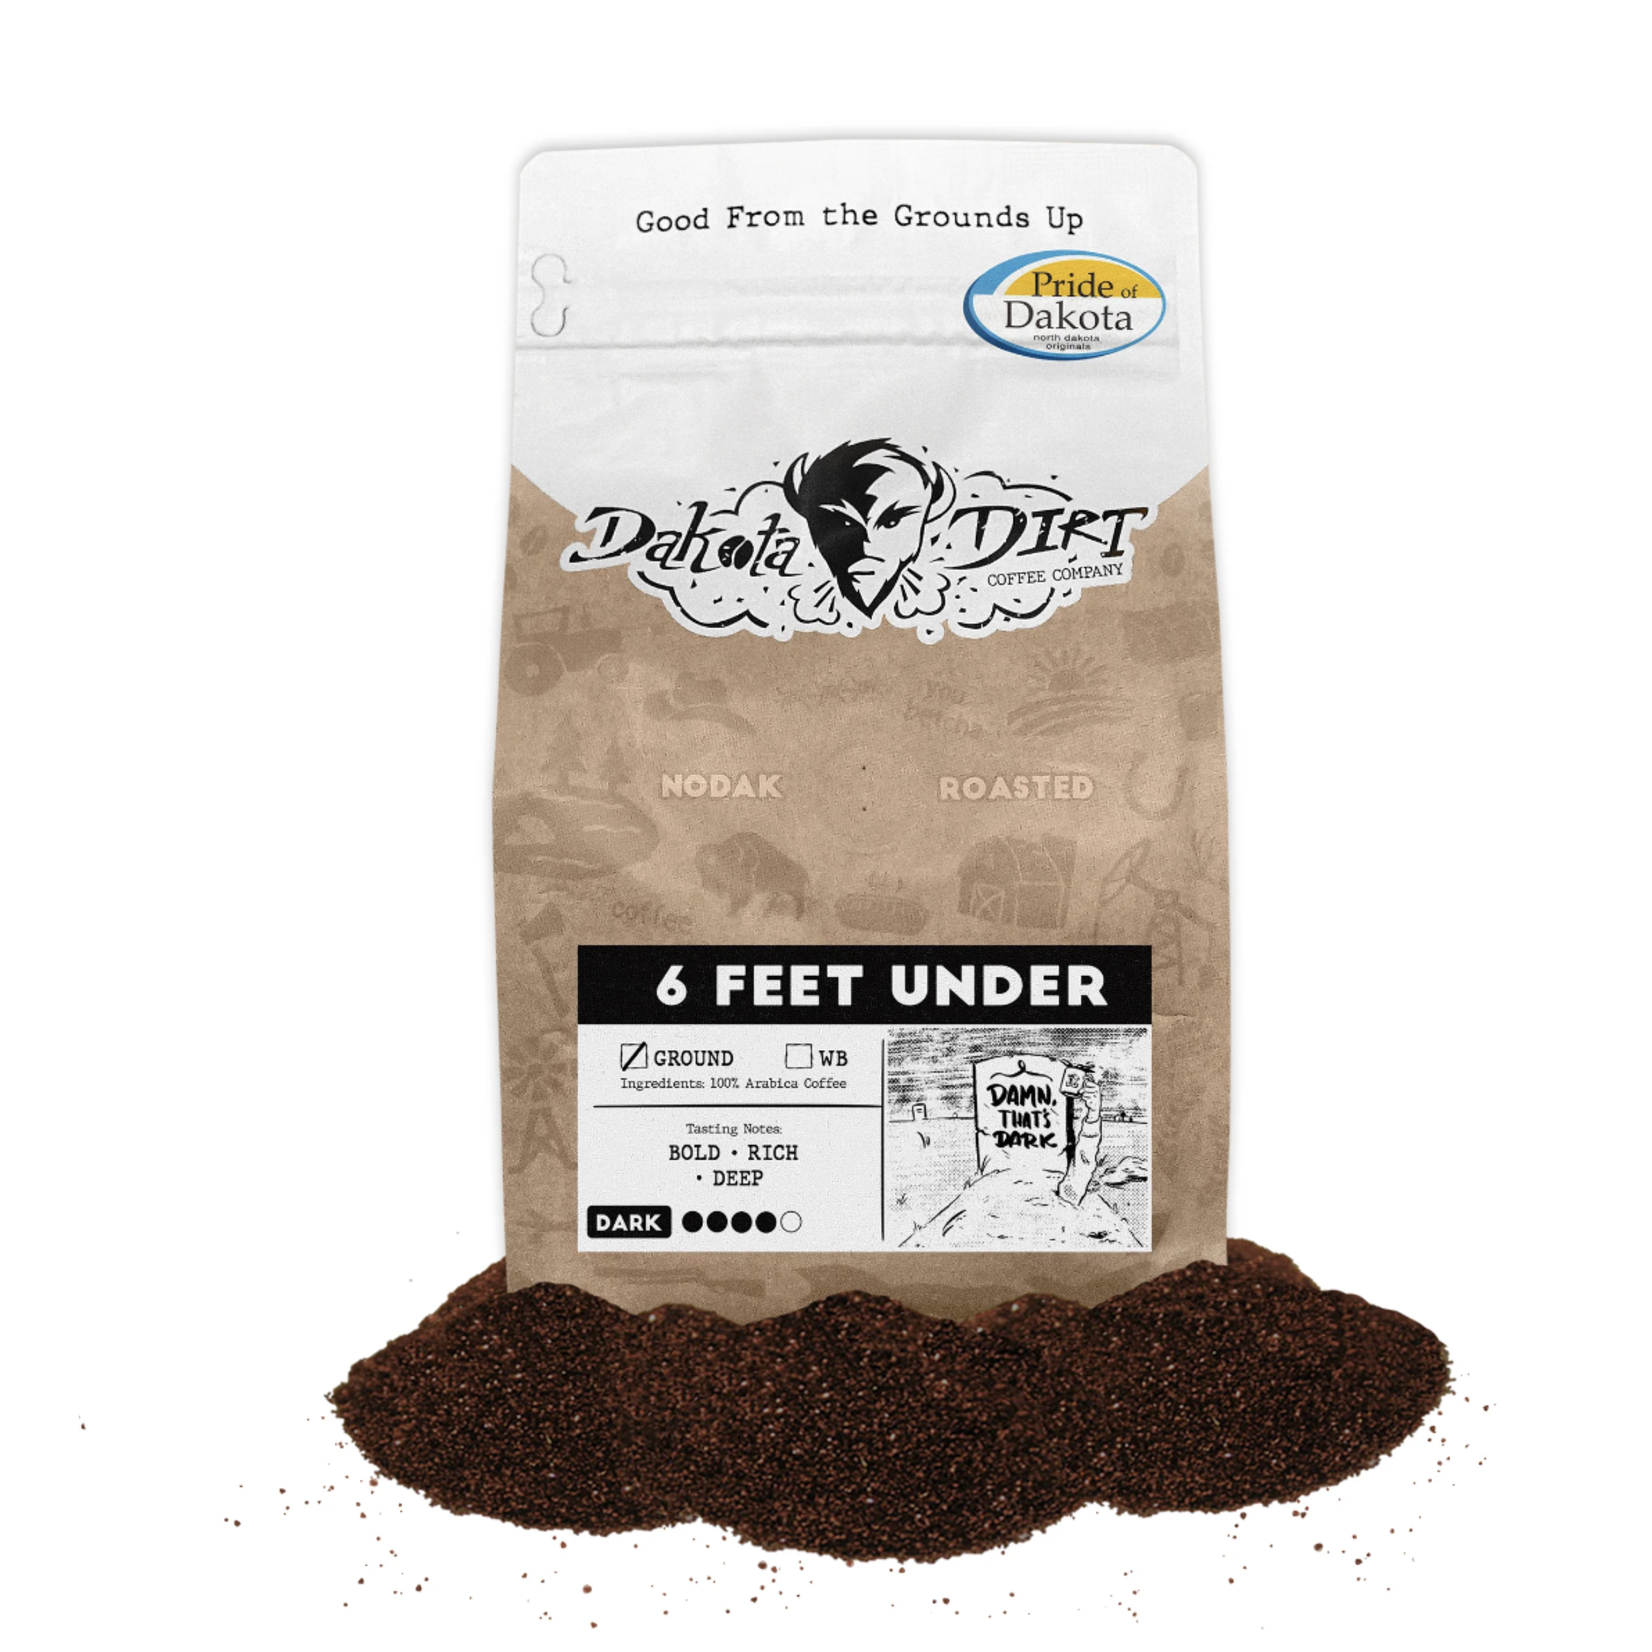 Dakota Dirt Dakota Dirt, 6 Feet Under Dark Roast